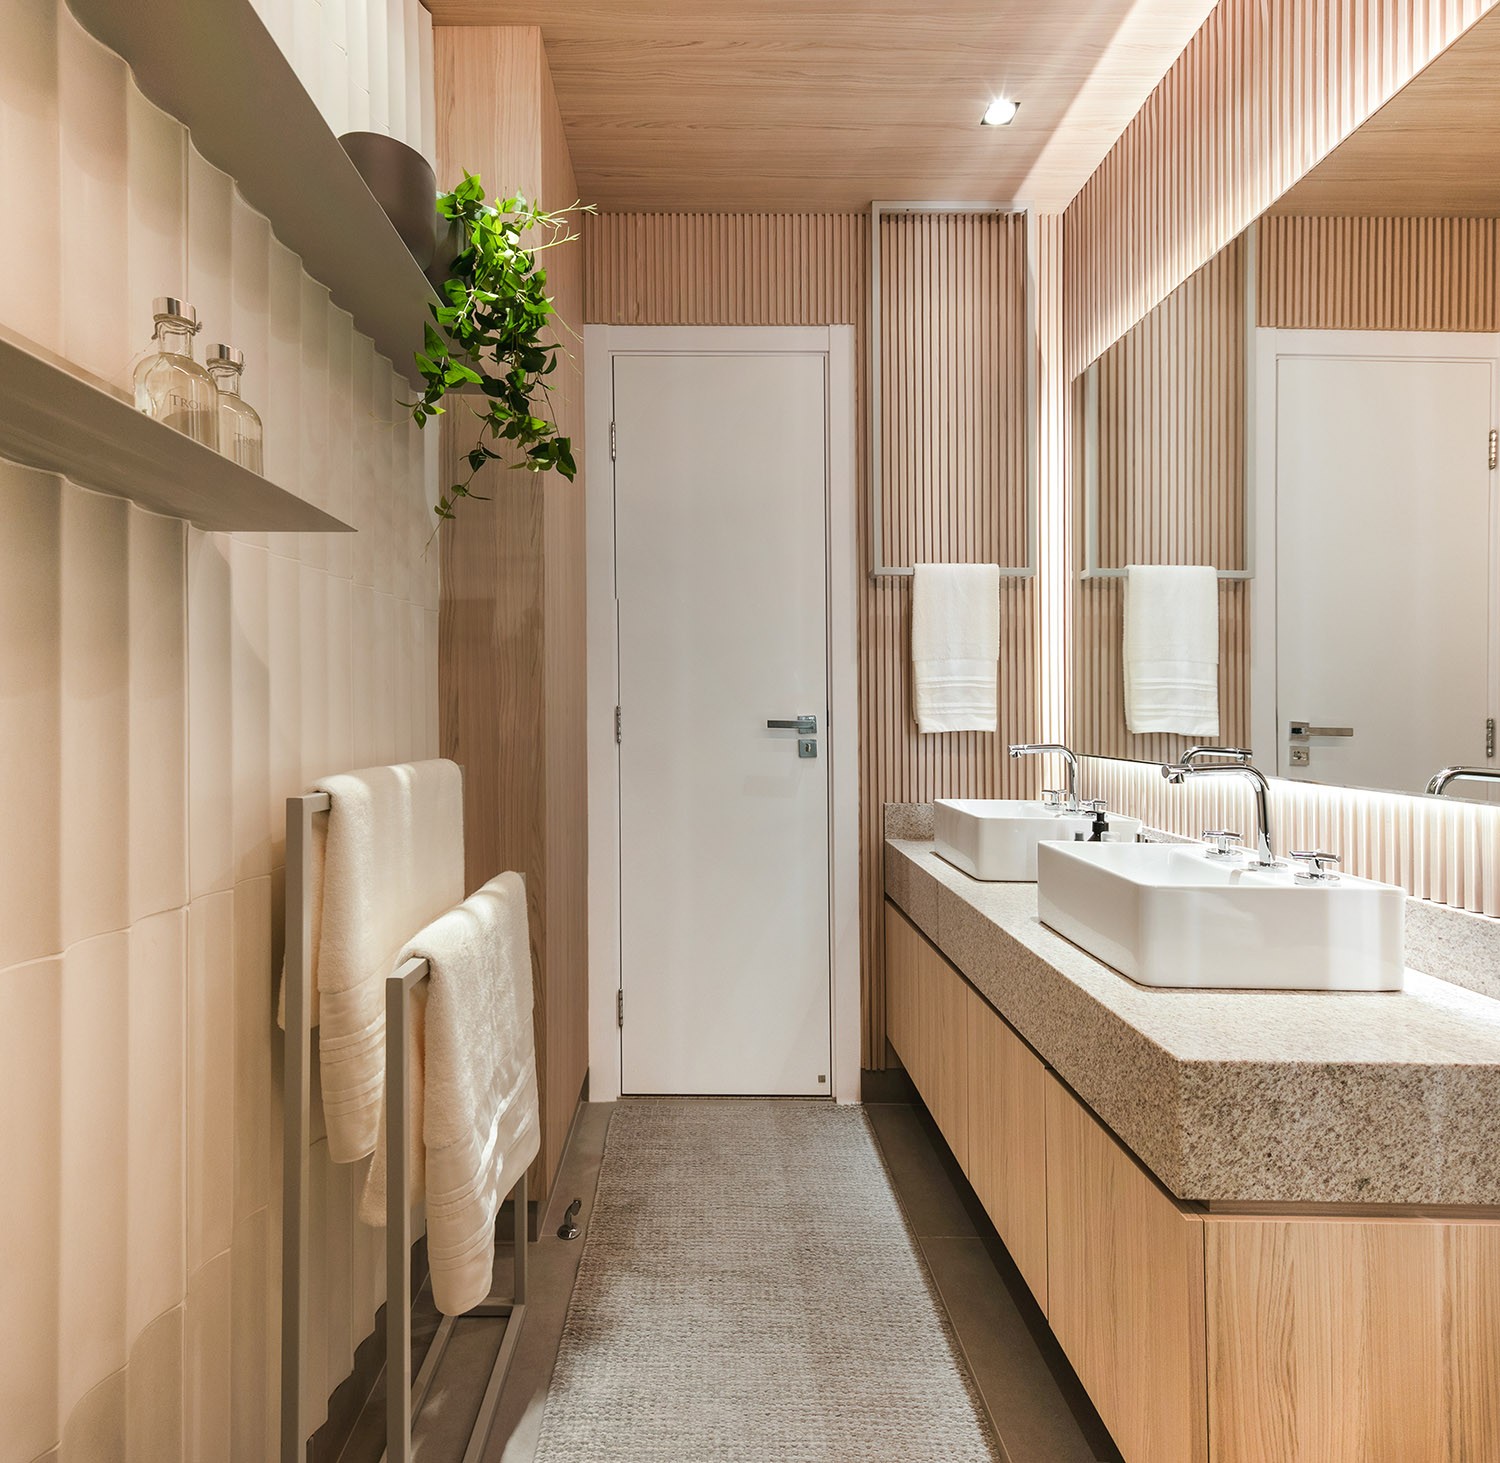 BANHEIRO | Nos banheiros, o revestimento 3D que imita madeira se repete. (Foto: Fellipe Lima / Divulgação)